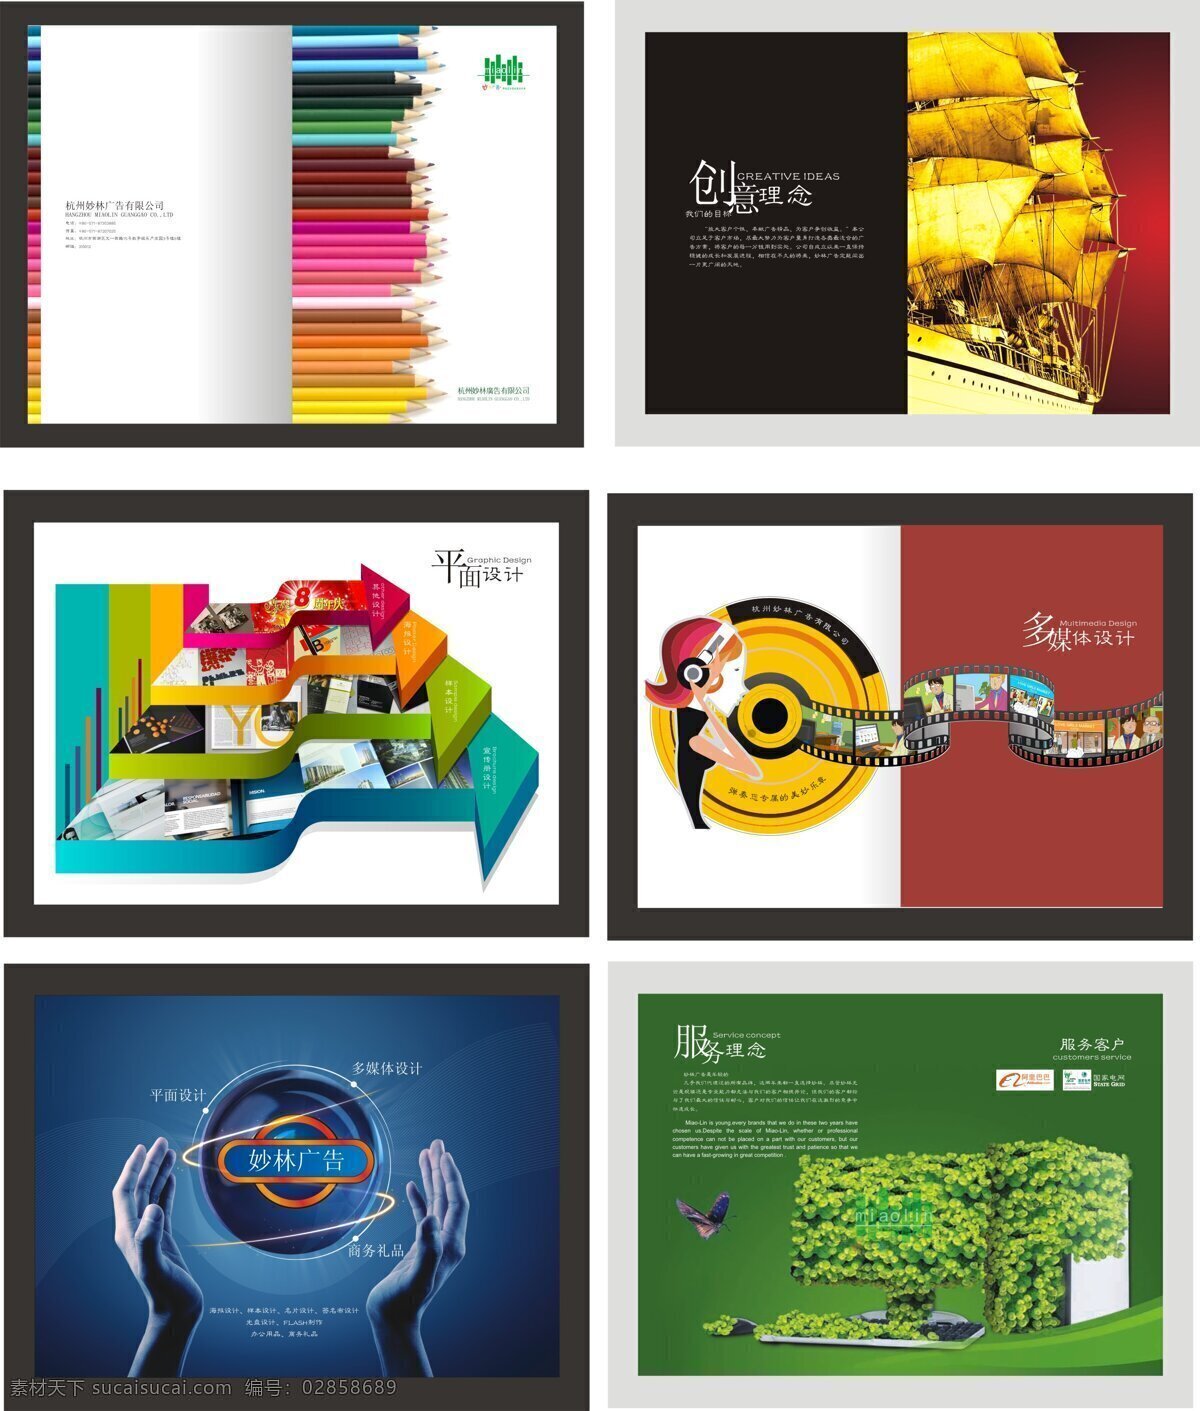 广告公司 画册设计 广告公司画册 企业画册 画册封面 创意理念 平面设计 多媒体制作 妙林广告 服务理念 科技 绿色 红色